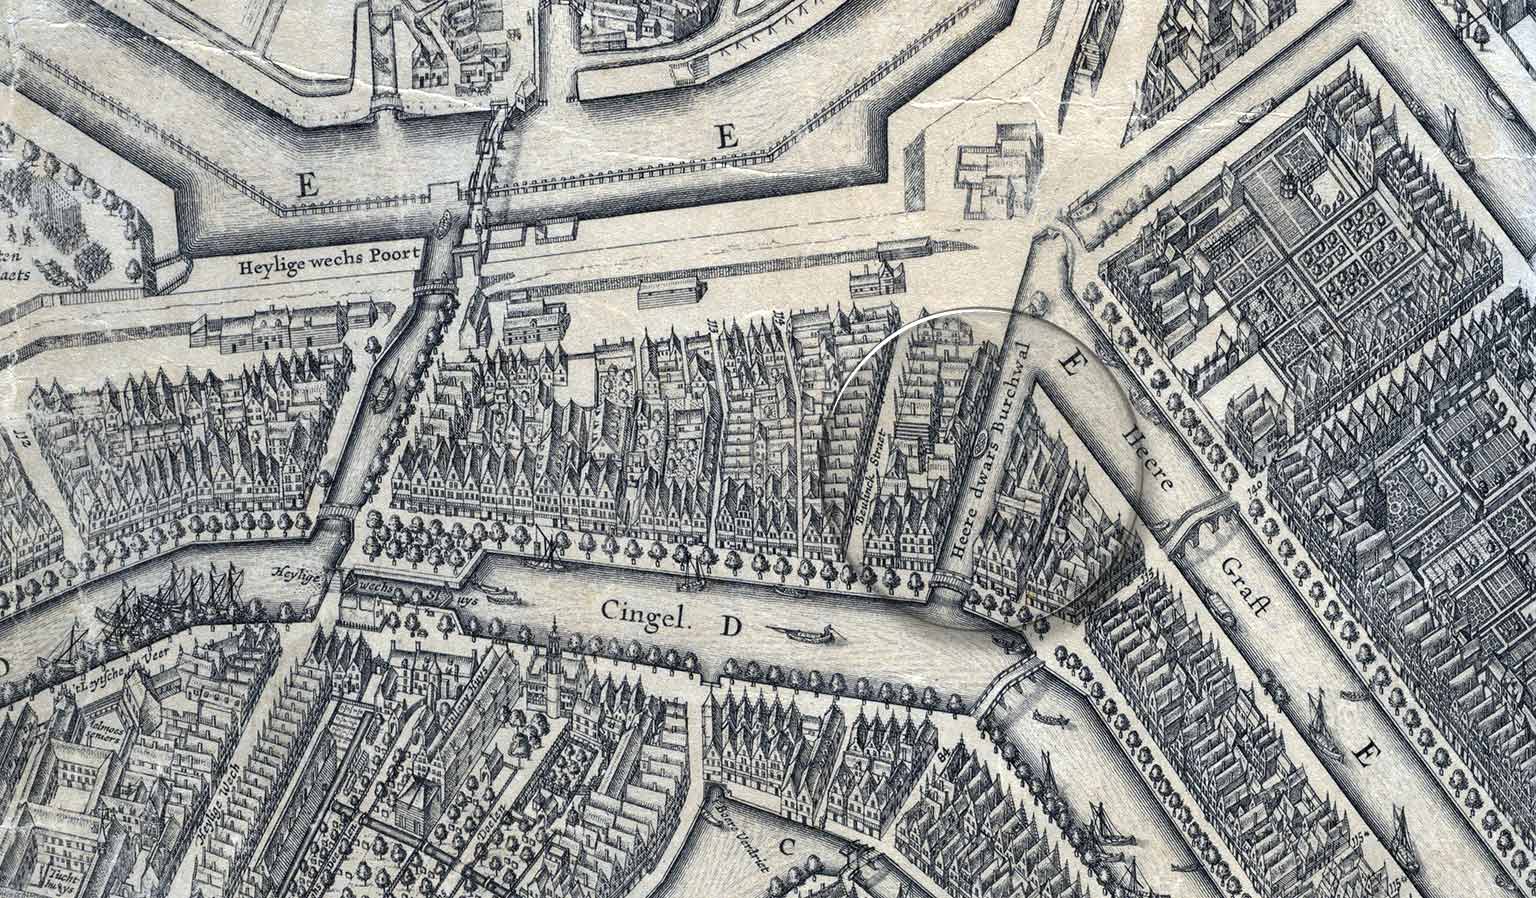 Beulingsloot, Amsterdam, on a map from 1625 by Balthasar Florisz van Berckenrode